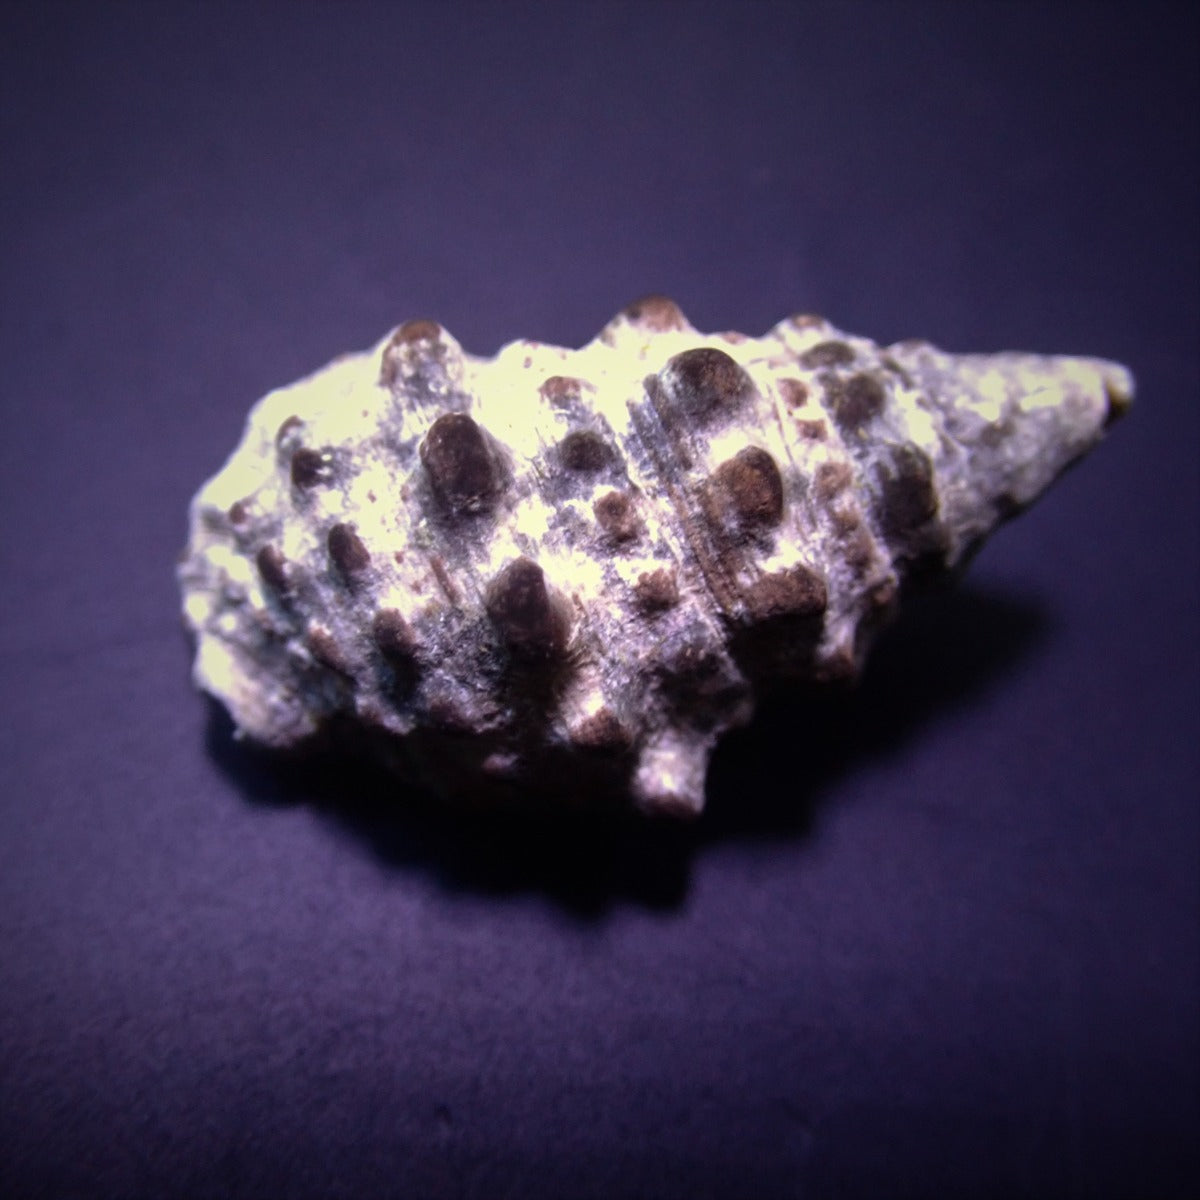 Cerithium caeruleum - Cerith sand snail